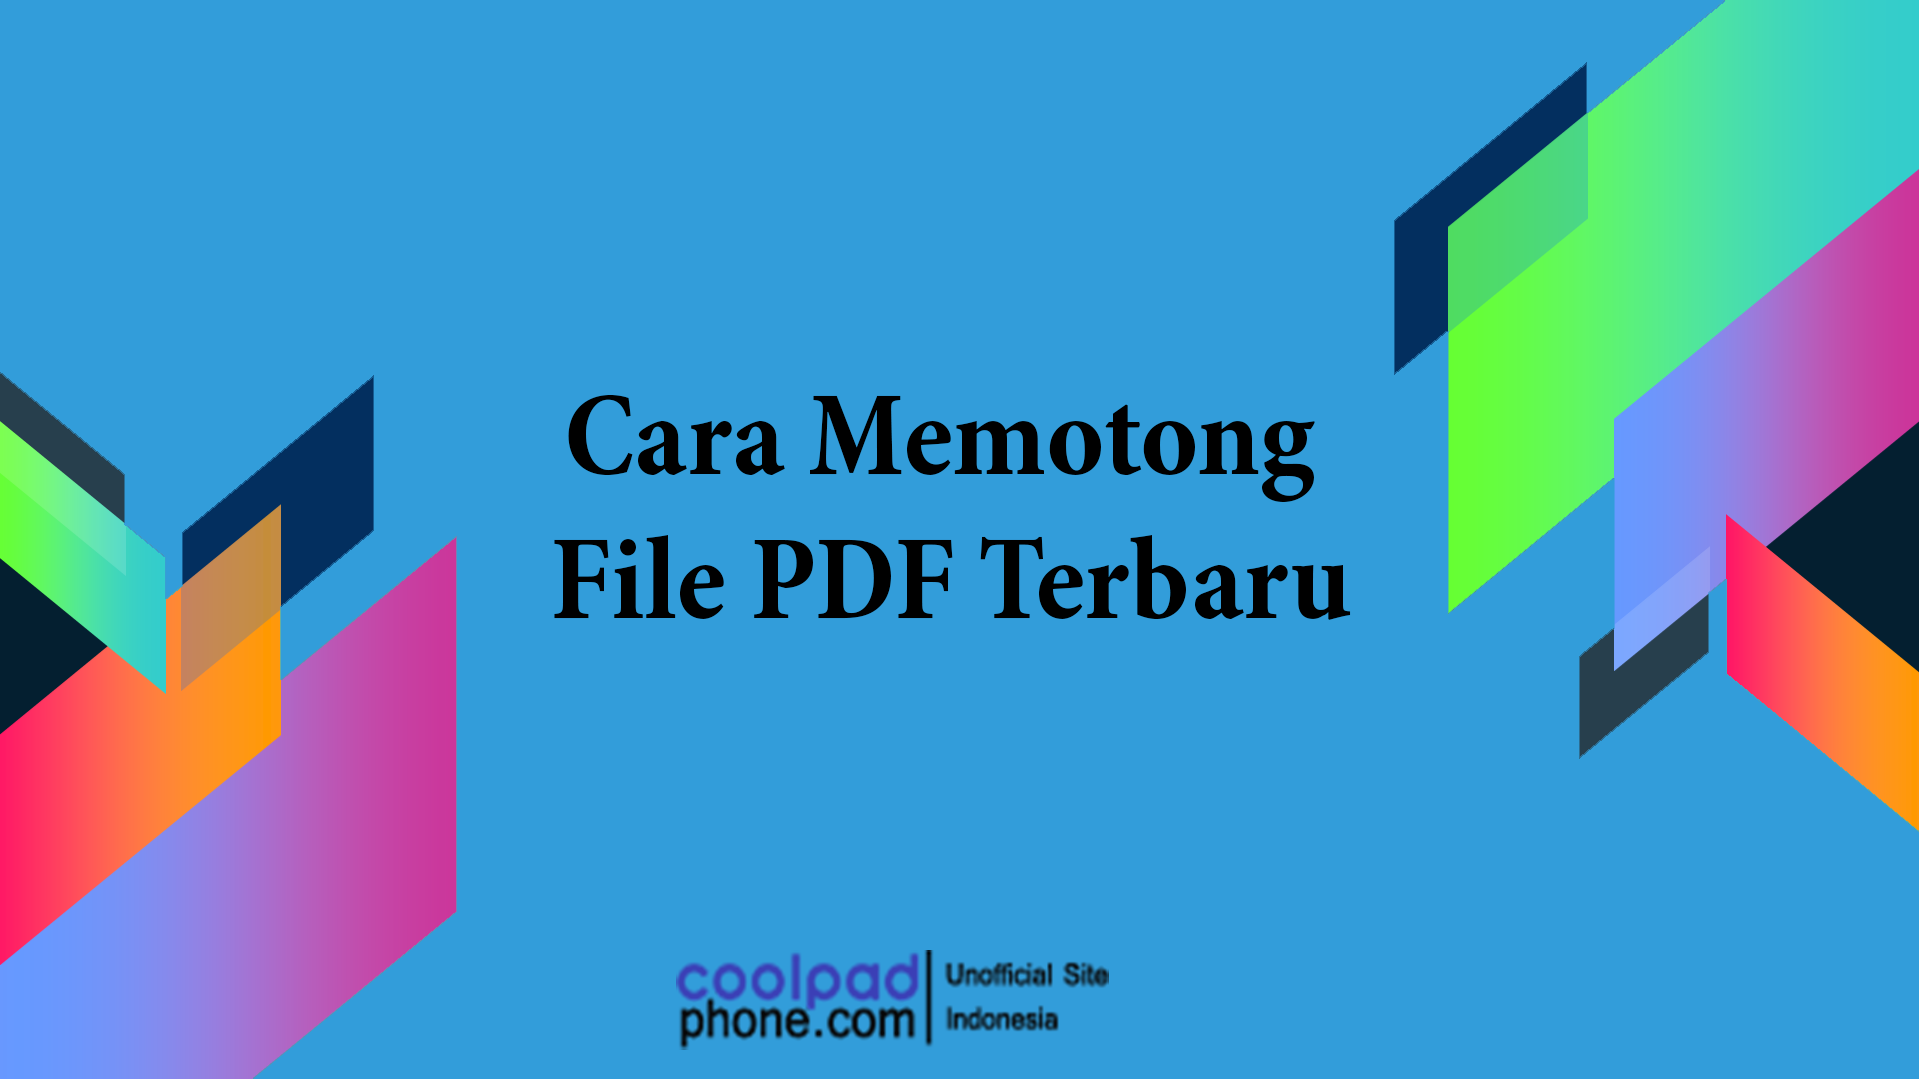 Cara Memotong File PDF Terbaru